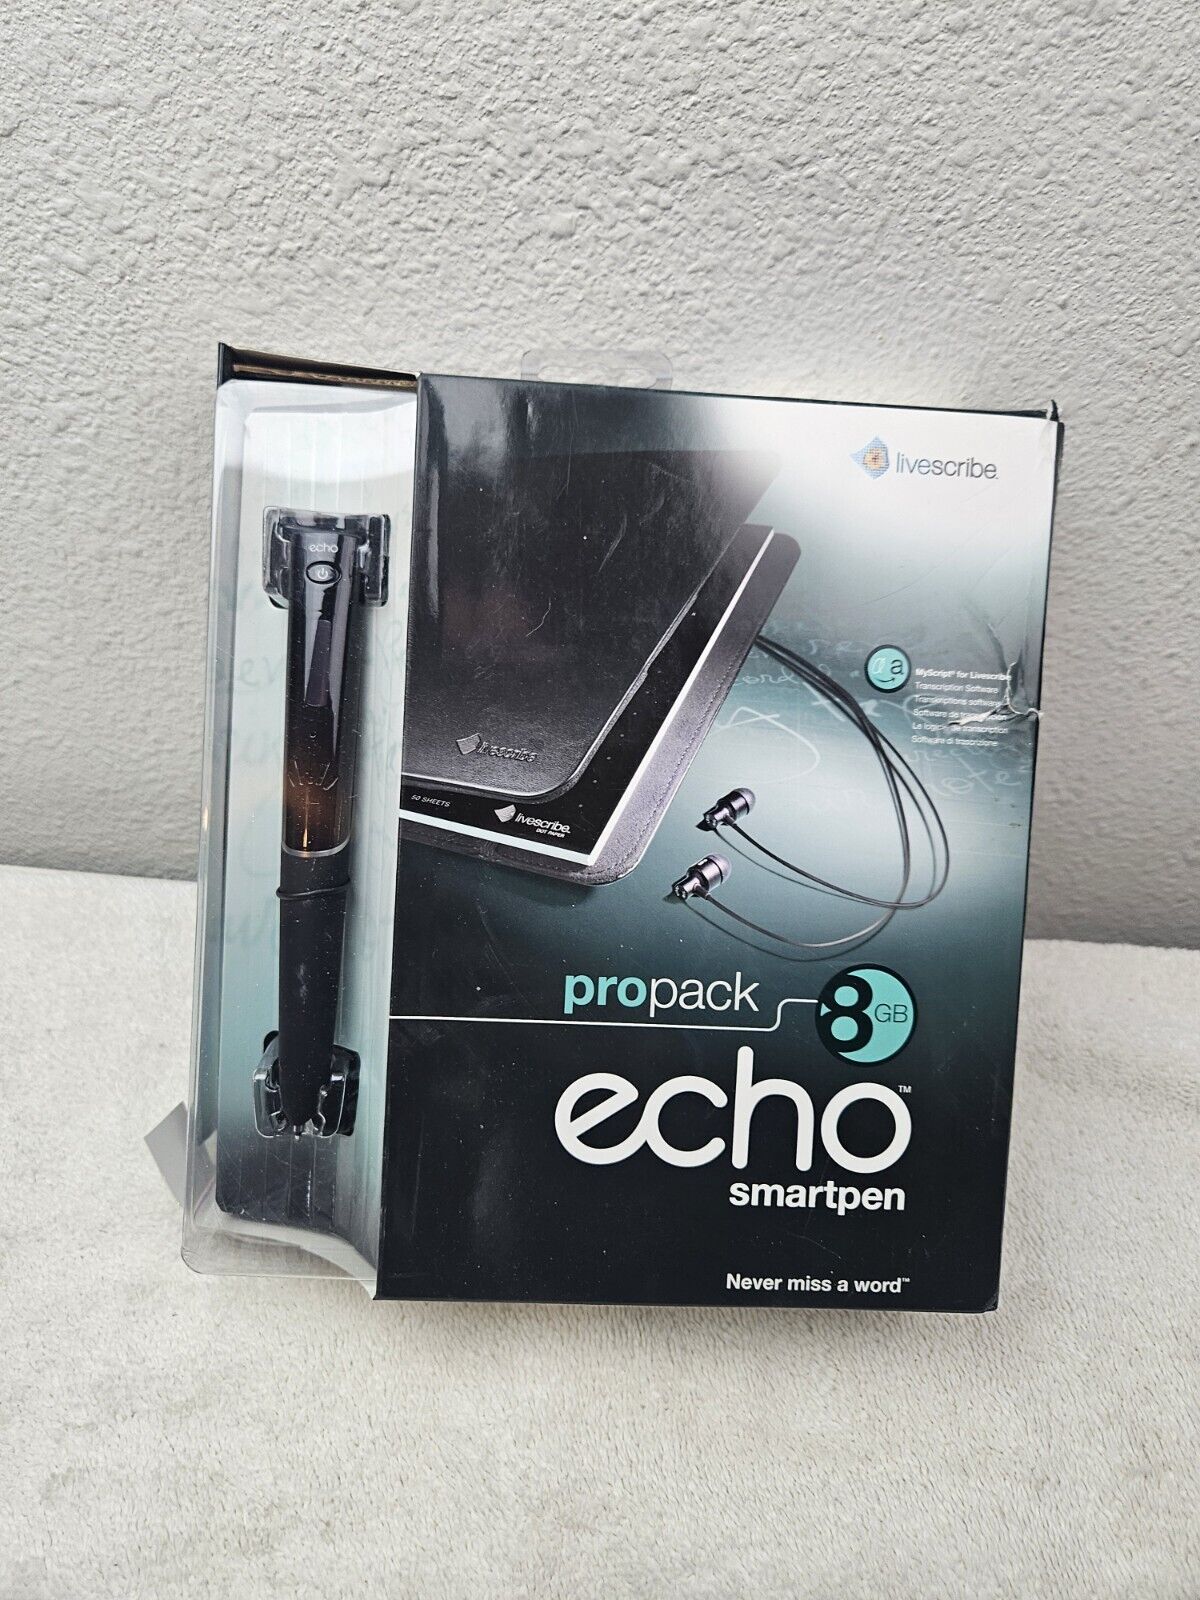 LIVESCRIBE PROPACK ECHO SMARTPEN   8 GB   NEW  OPEN BOX